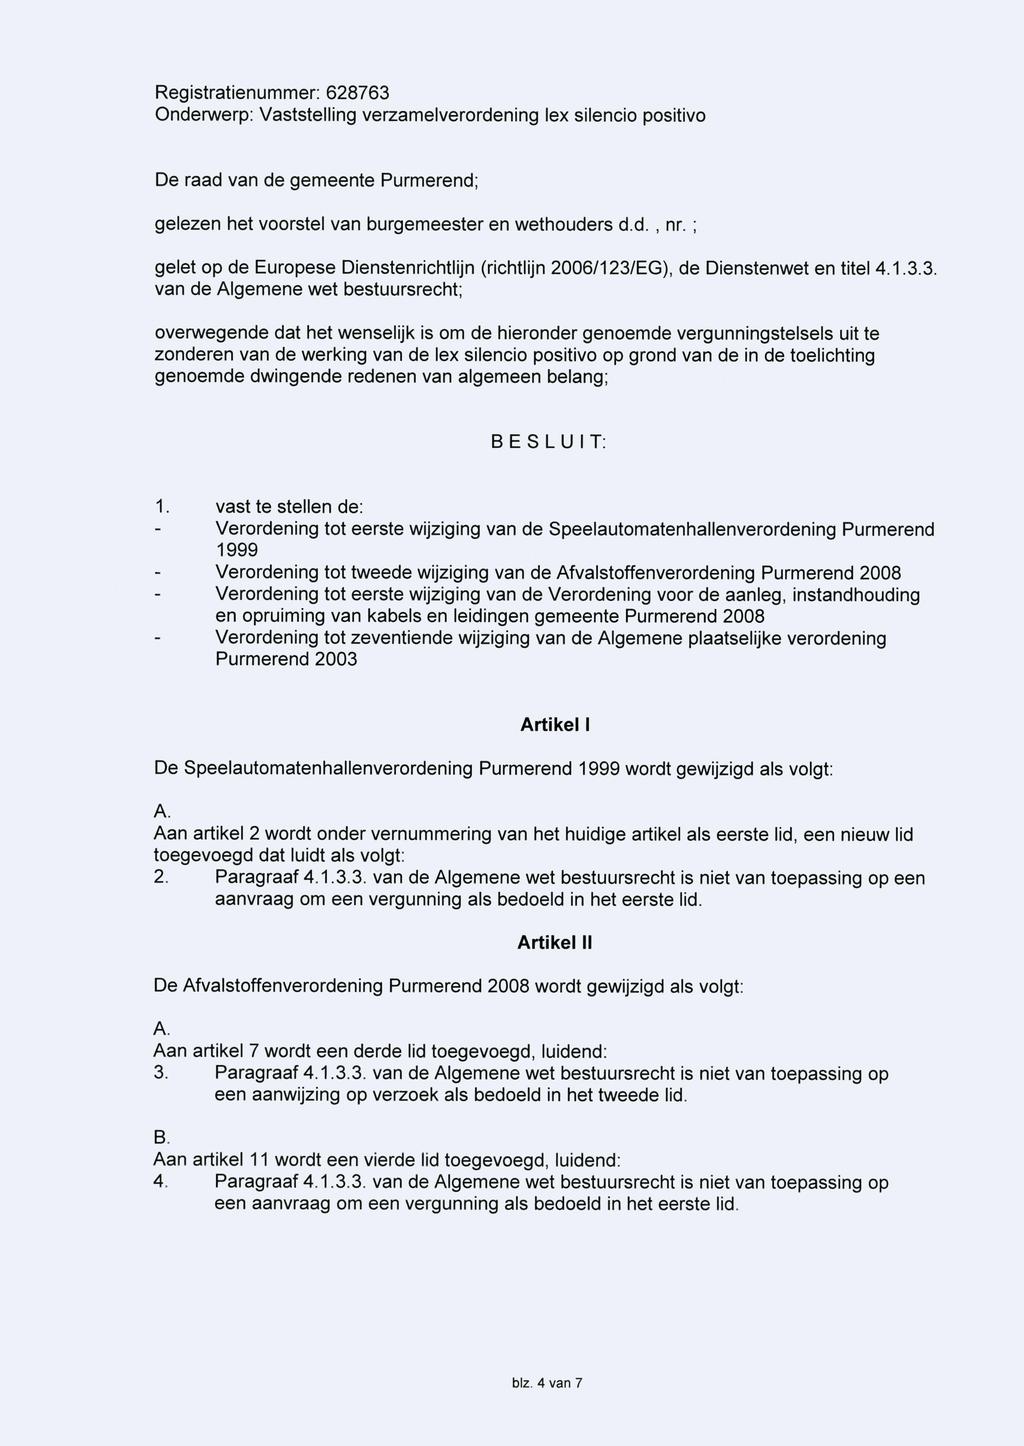 De raad van de gemeente Purmerend; gelezen het voorstel van burgemeester en wethouders d.d., nr. ; gelet op de Europese Dienstenrichtlijn (richtlijn 2006/123/